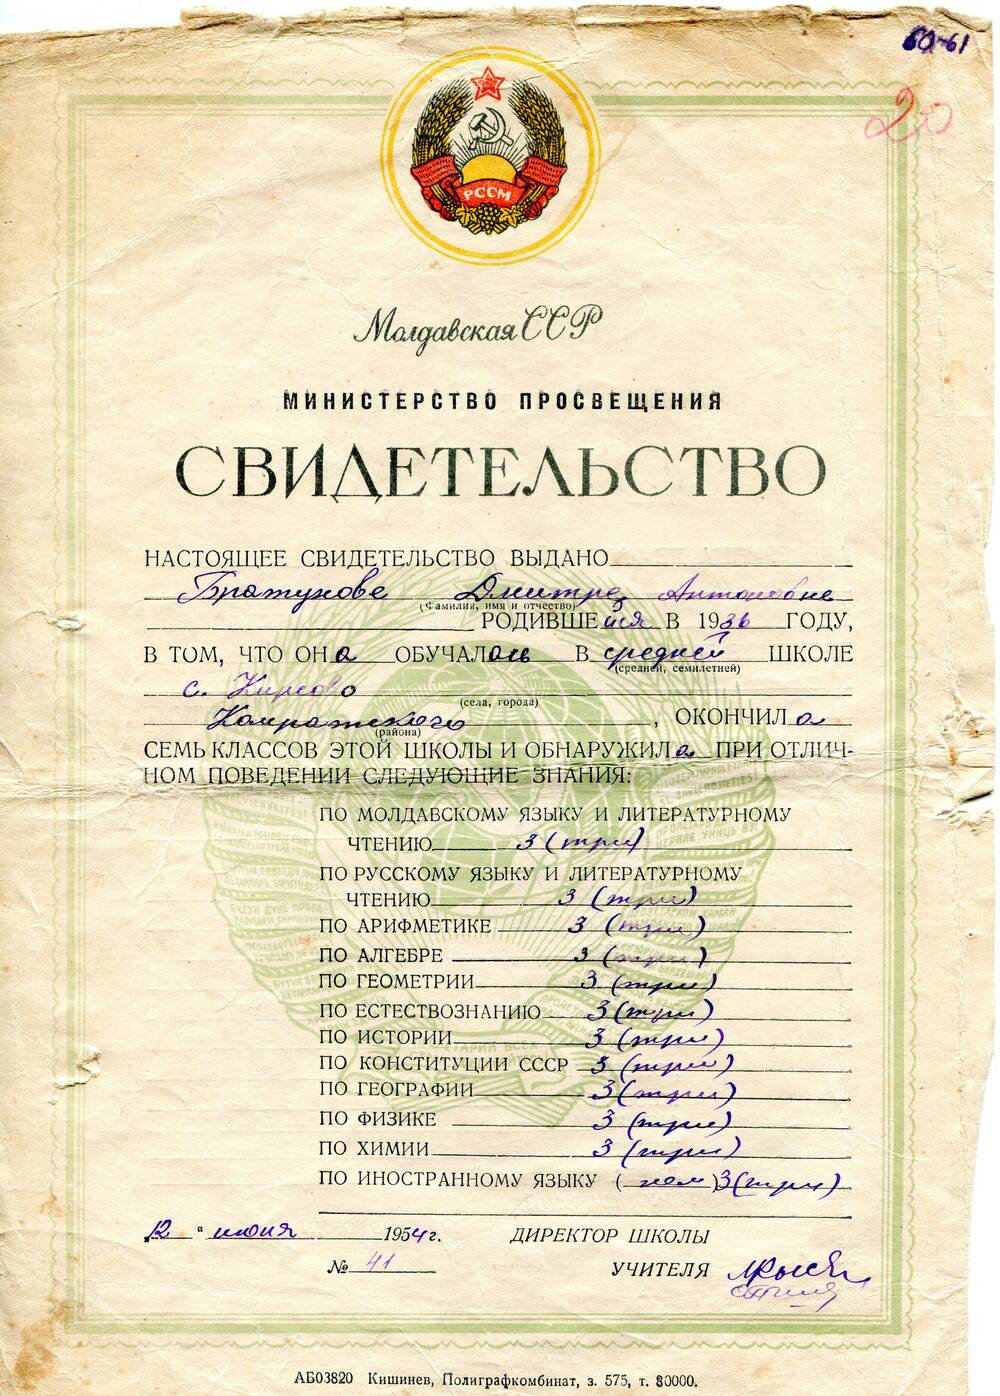 Свидетельство об окончании семи классов средней школы  г.Кирова , выдано  Братуновой Дмитре Антоновне 1936 г. рождения.